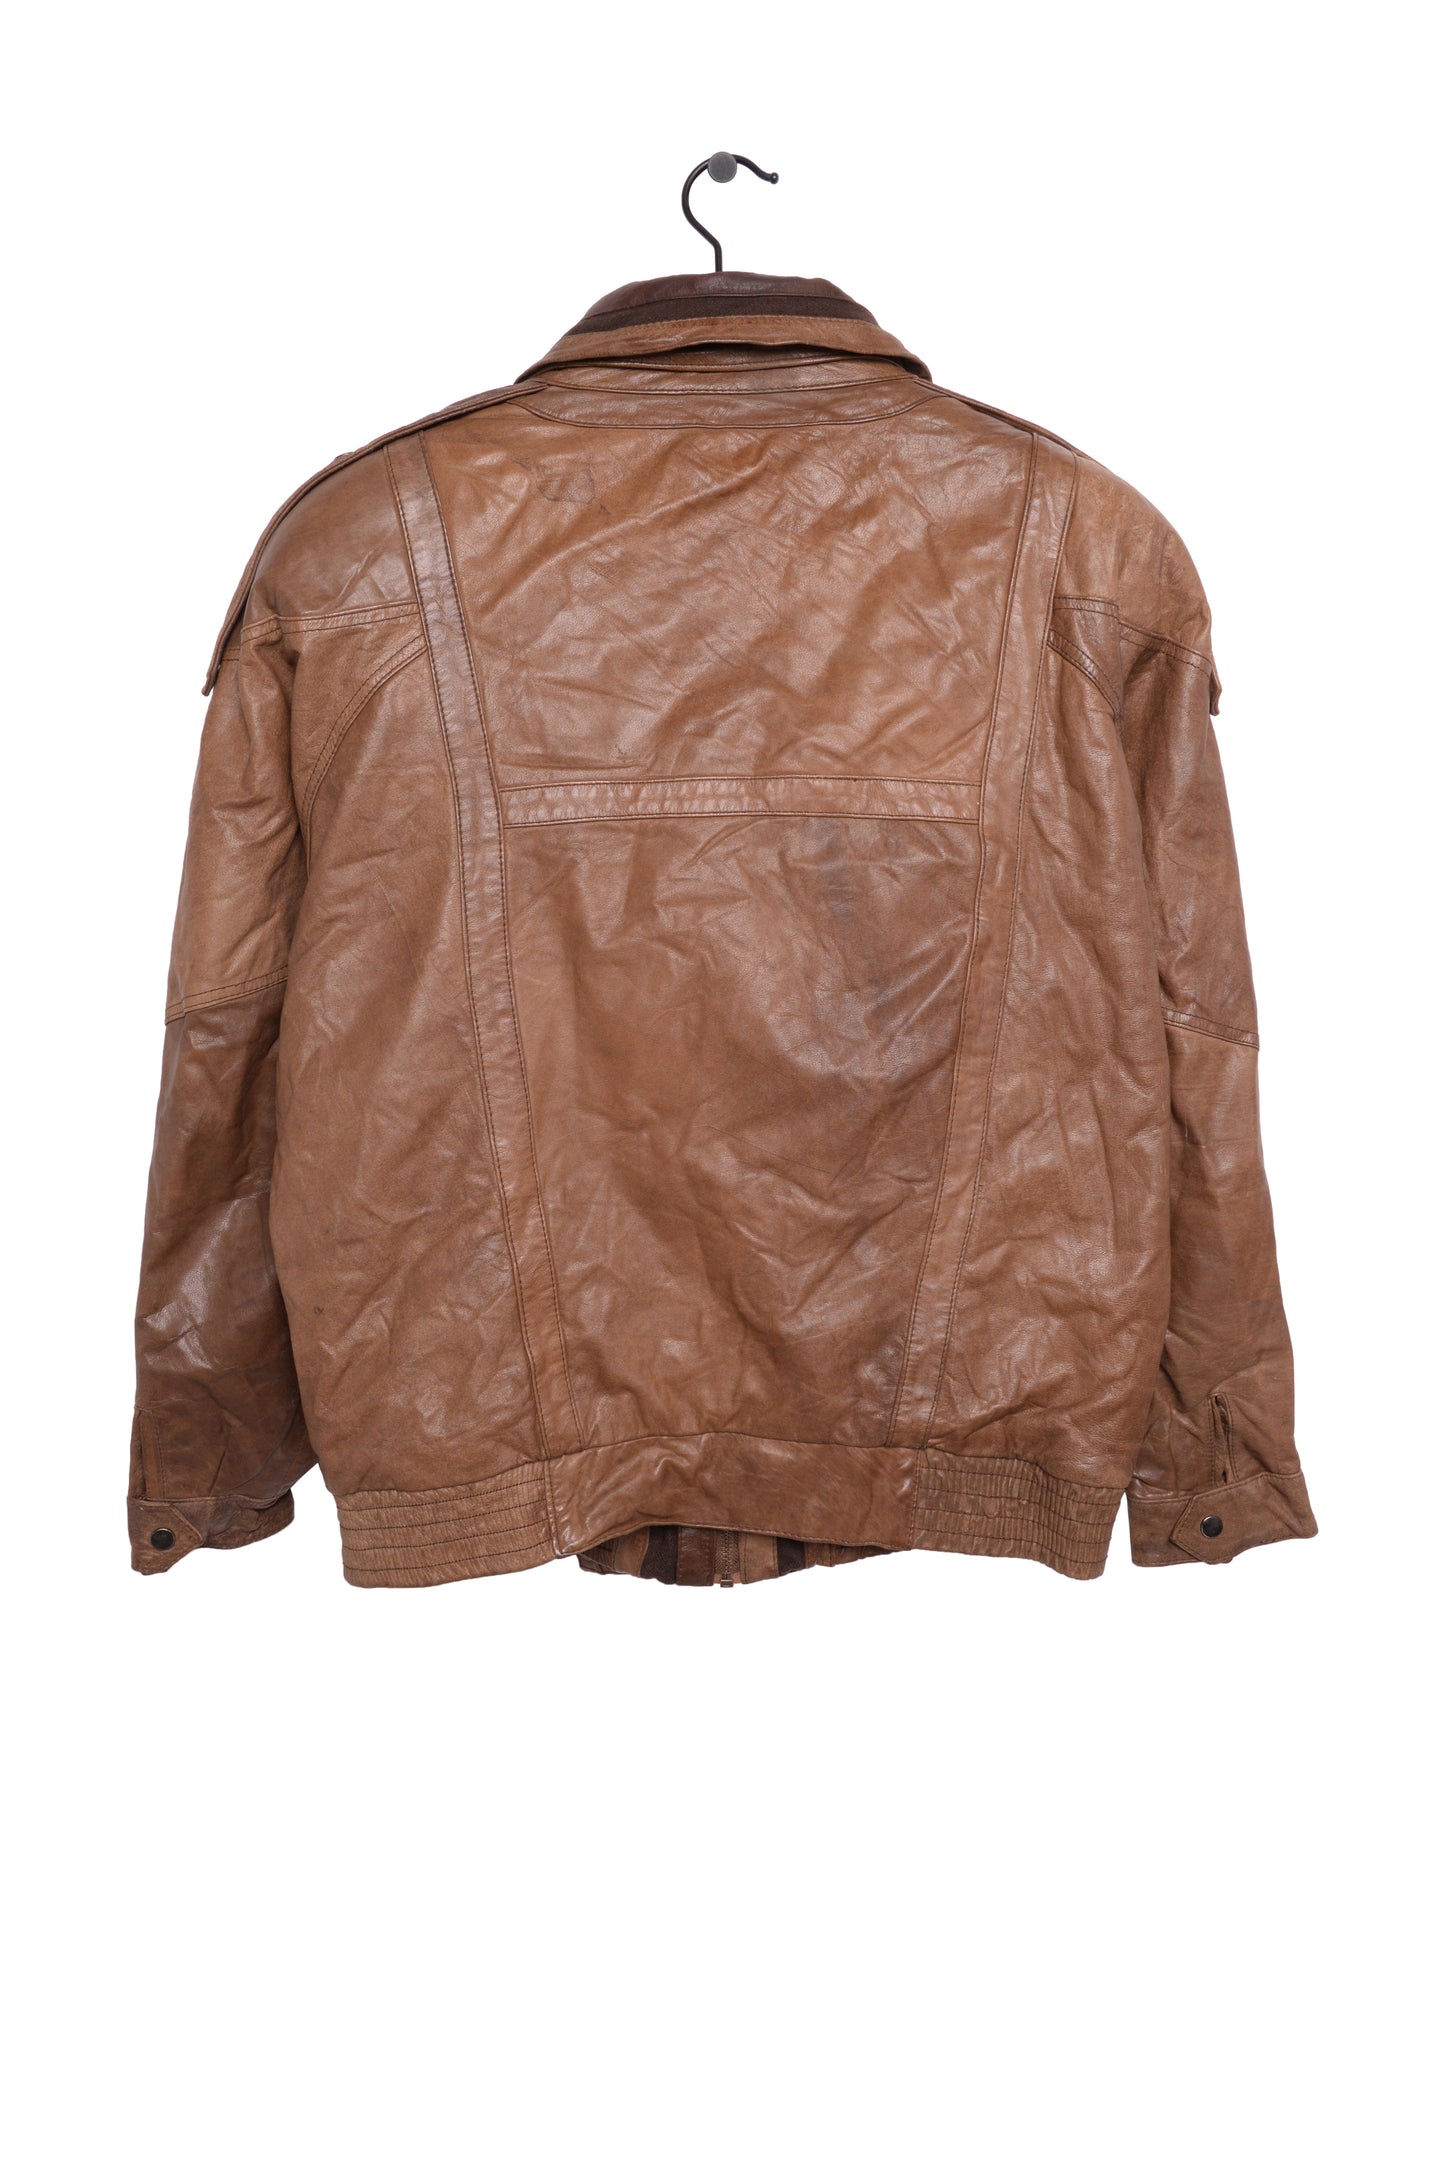 1980s Caramel Leather Bomber Jacket